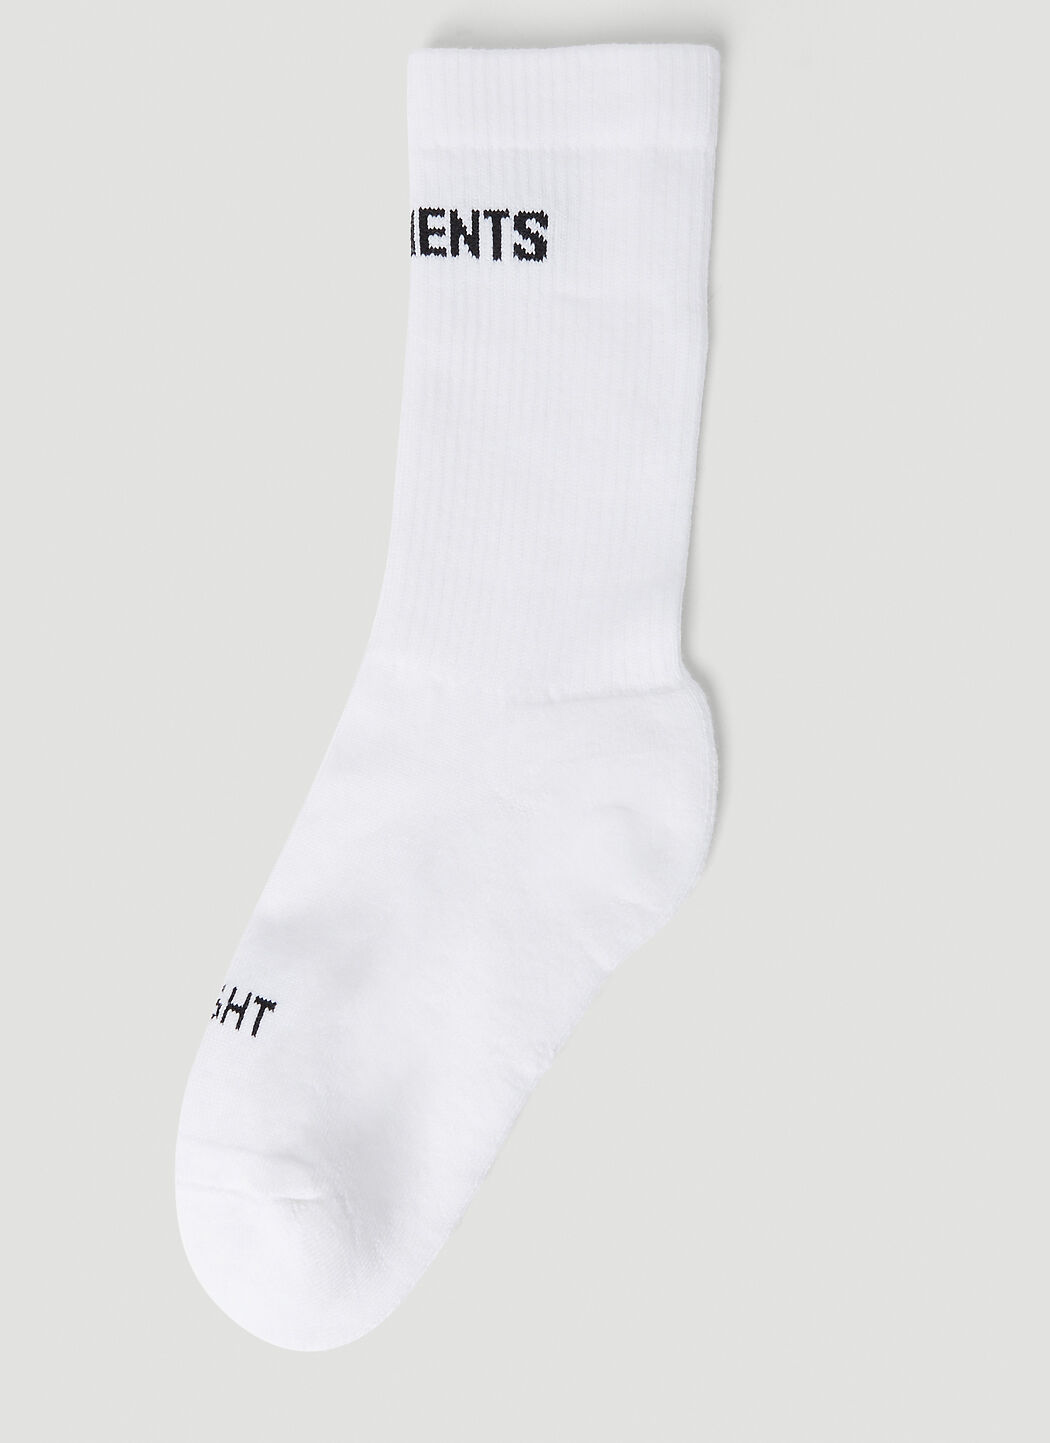 VETEMENTS Logo Socks White vet0254008